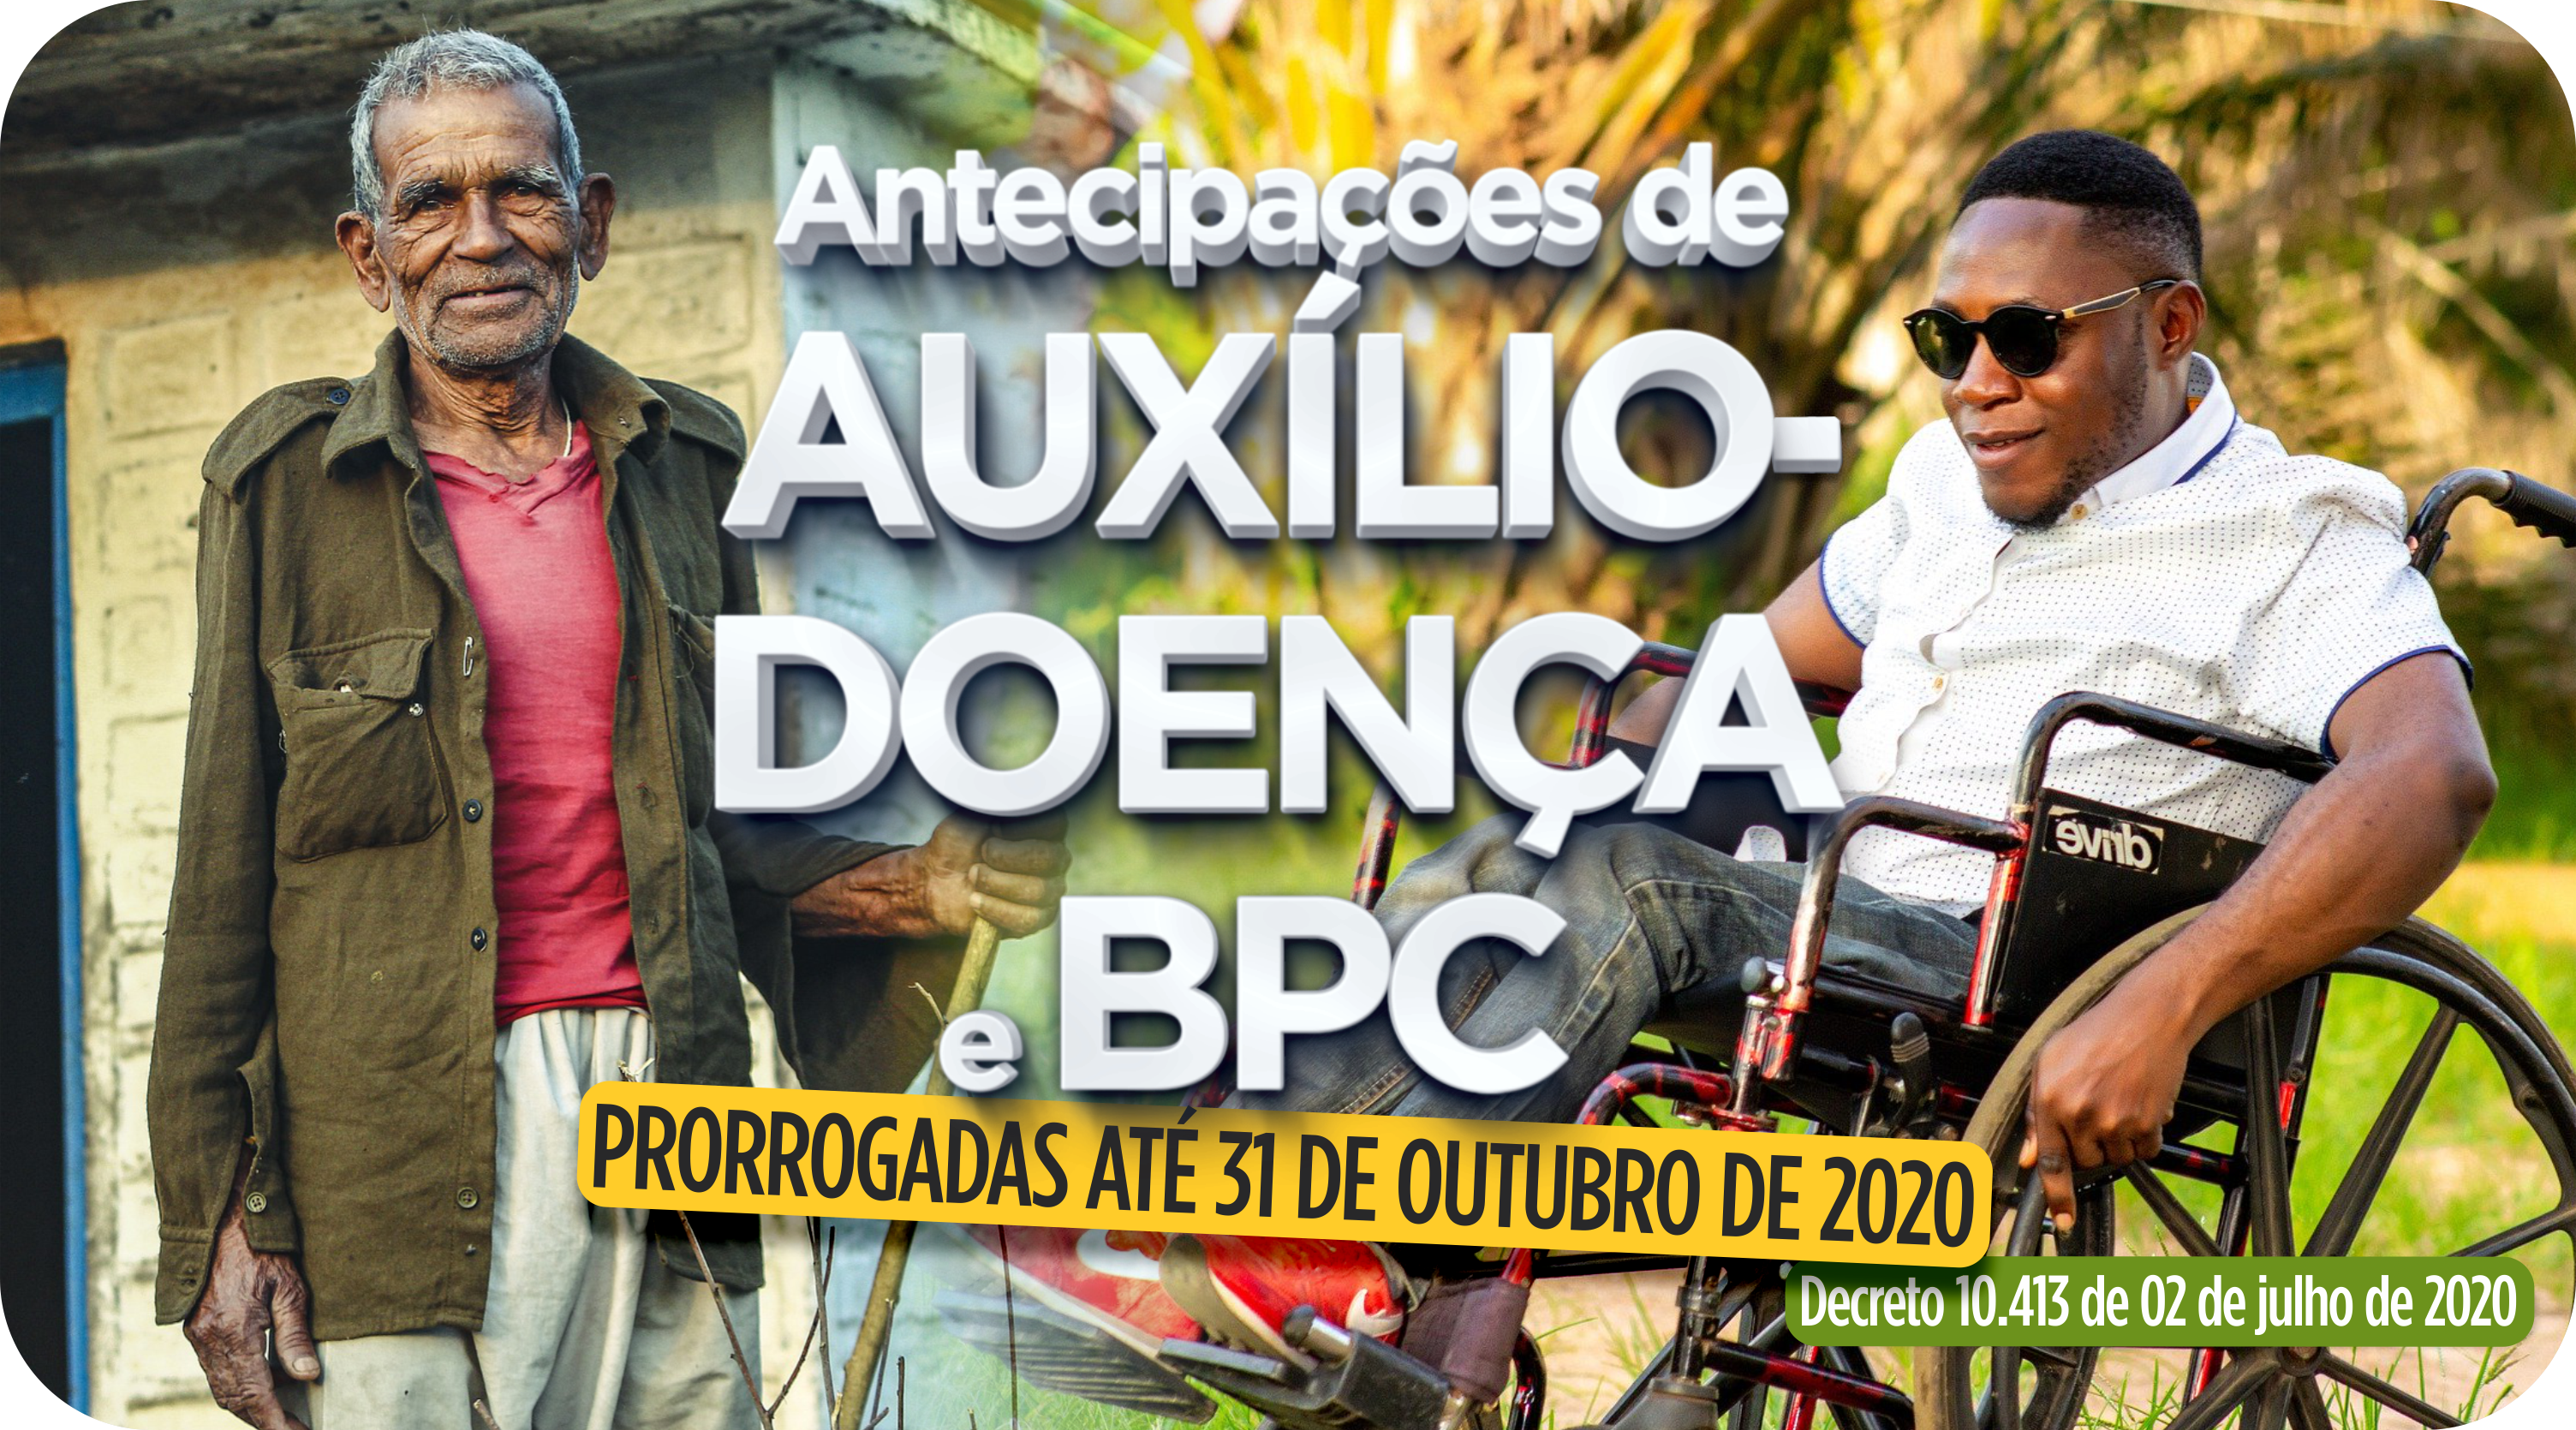 Antecipações de Auxílio-doença e BPC - Prorrogadas até 31 de outubro de 2020.